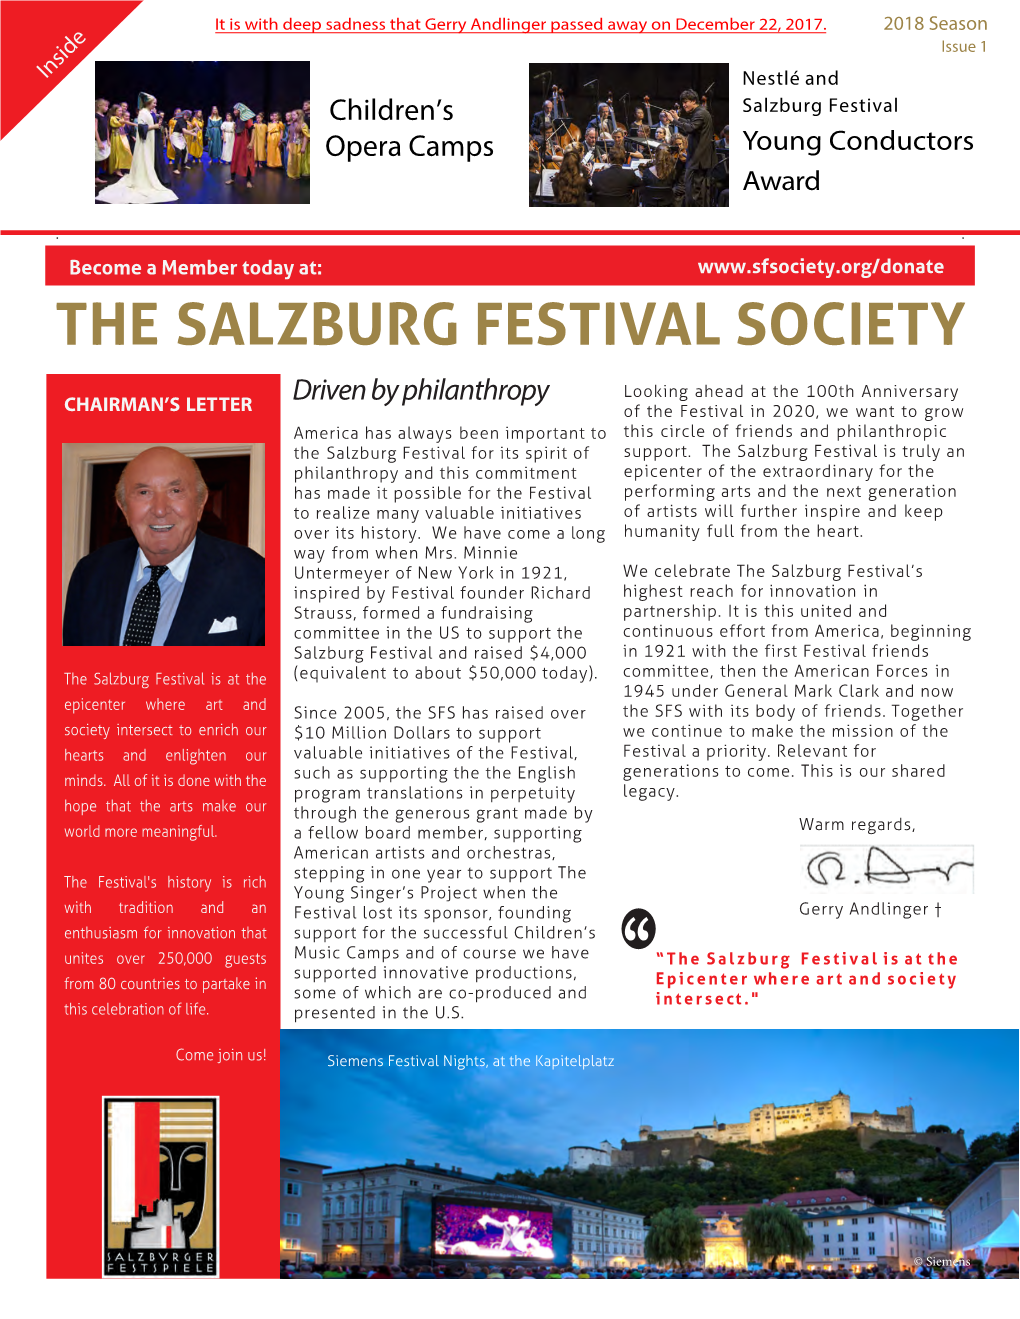 The Salzburg Festival Society